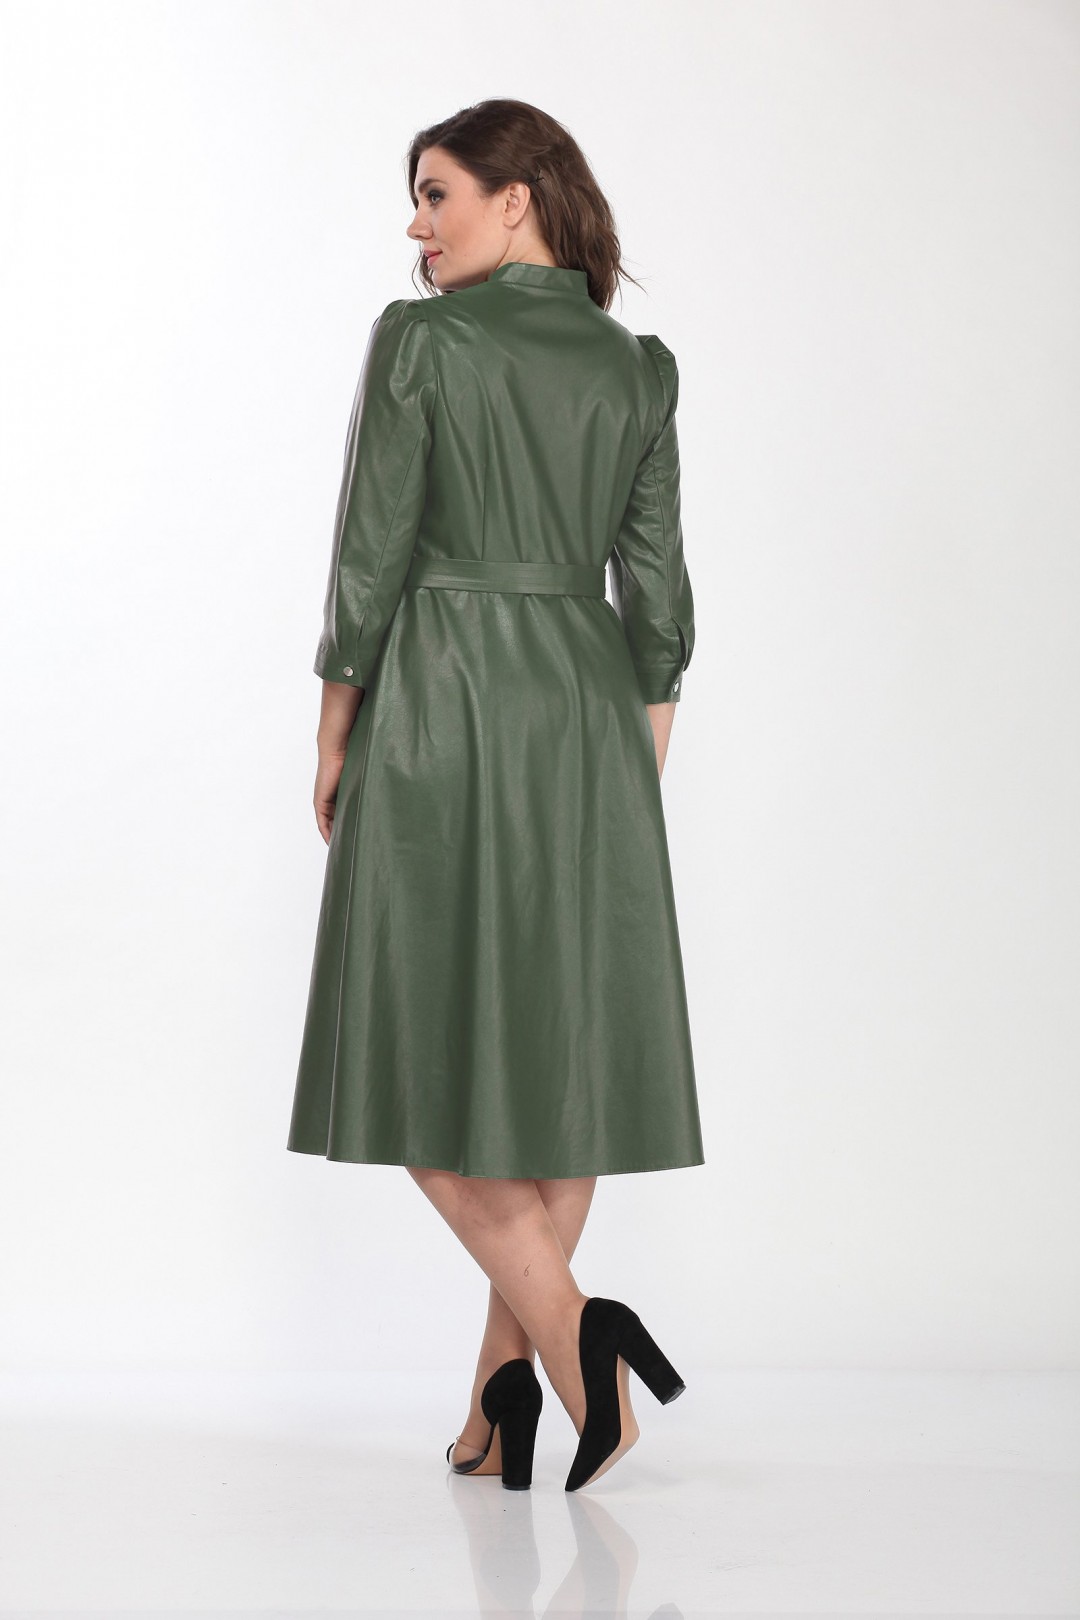 Платье LadyStyleClassic 2185-1 зеленые тона